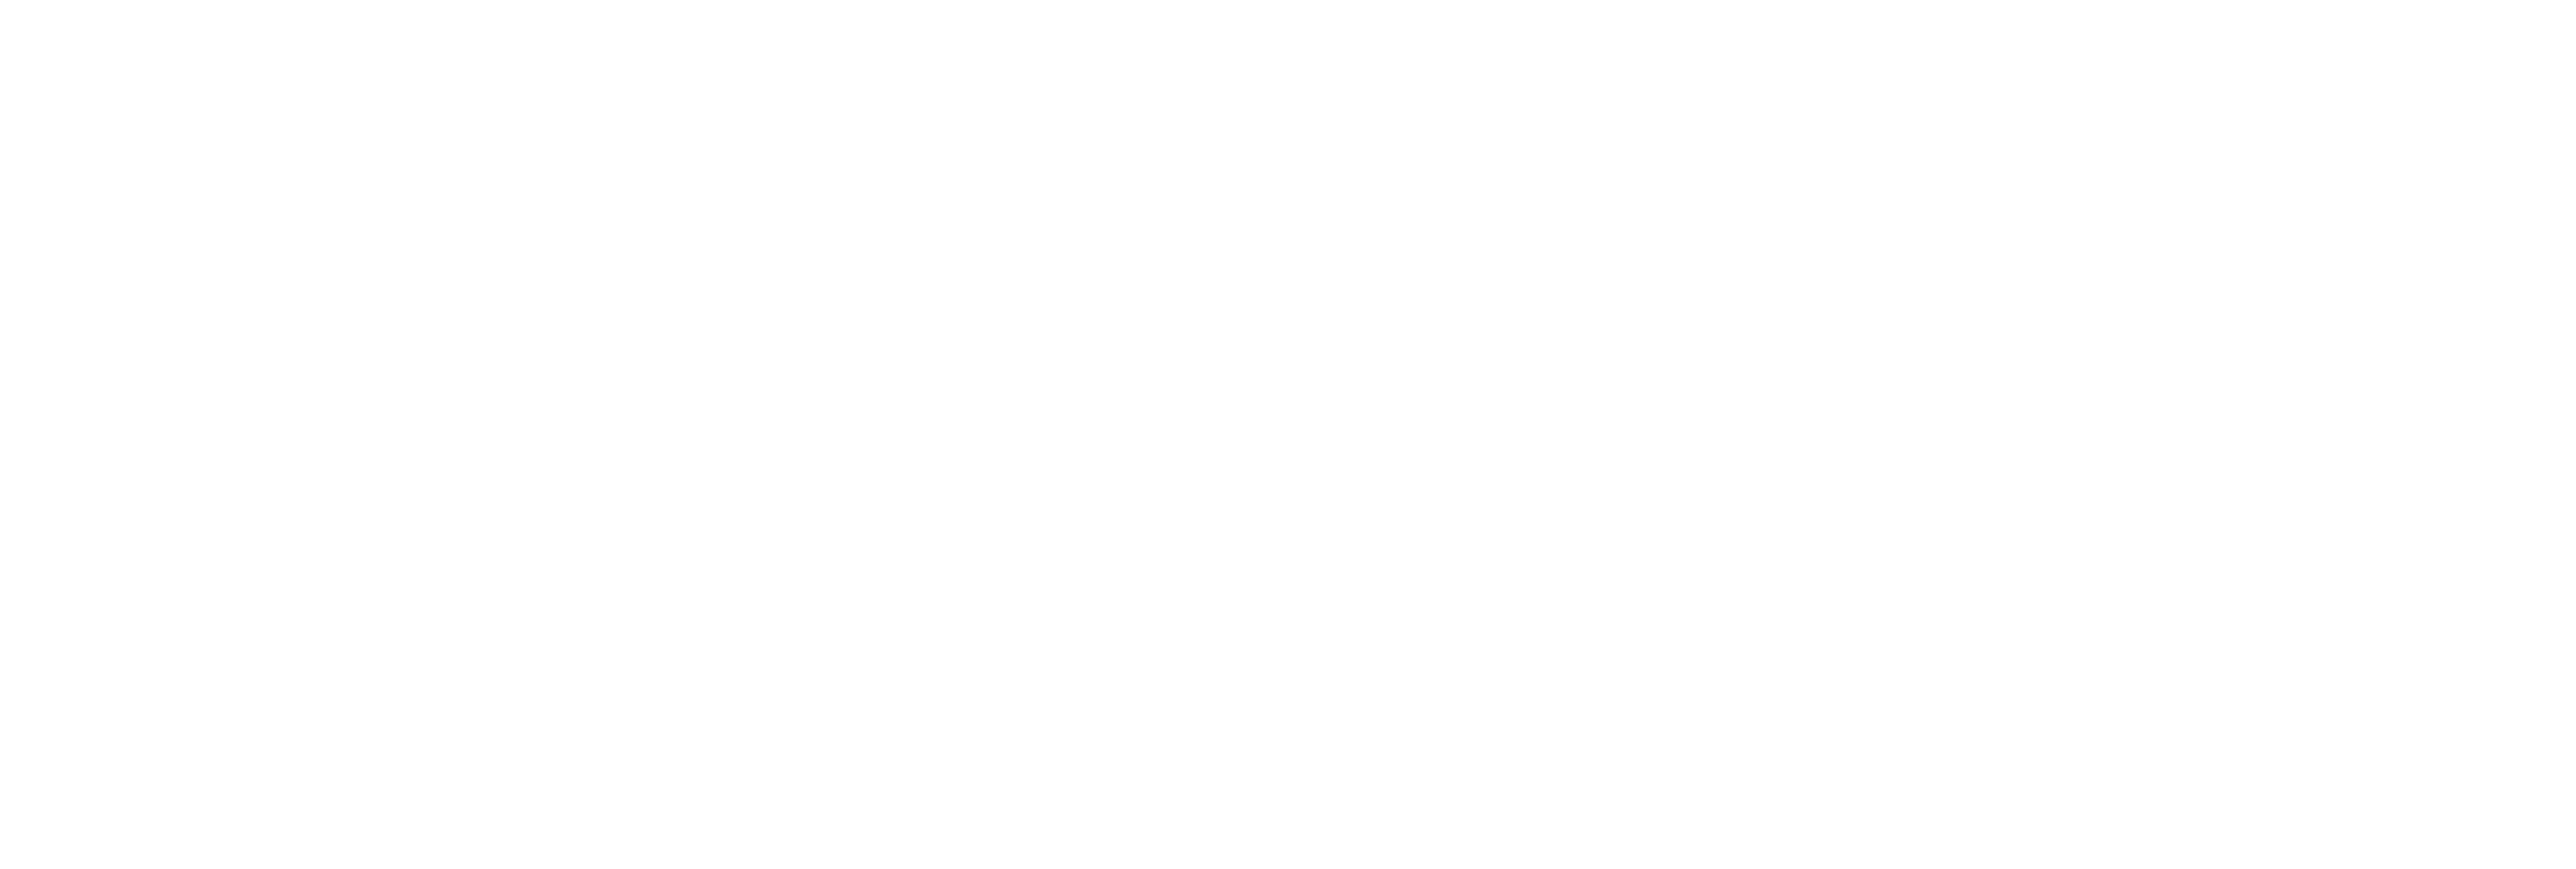 Murmullo